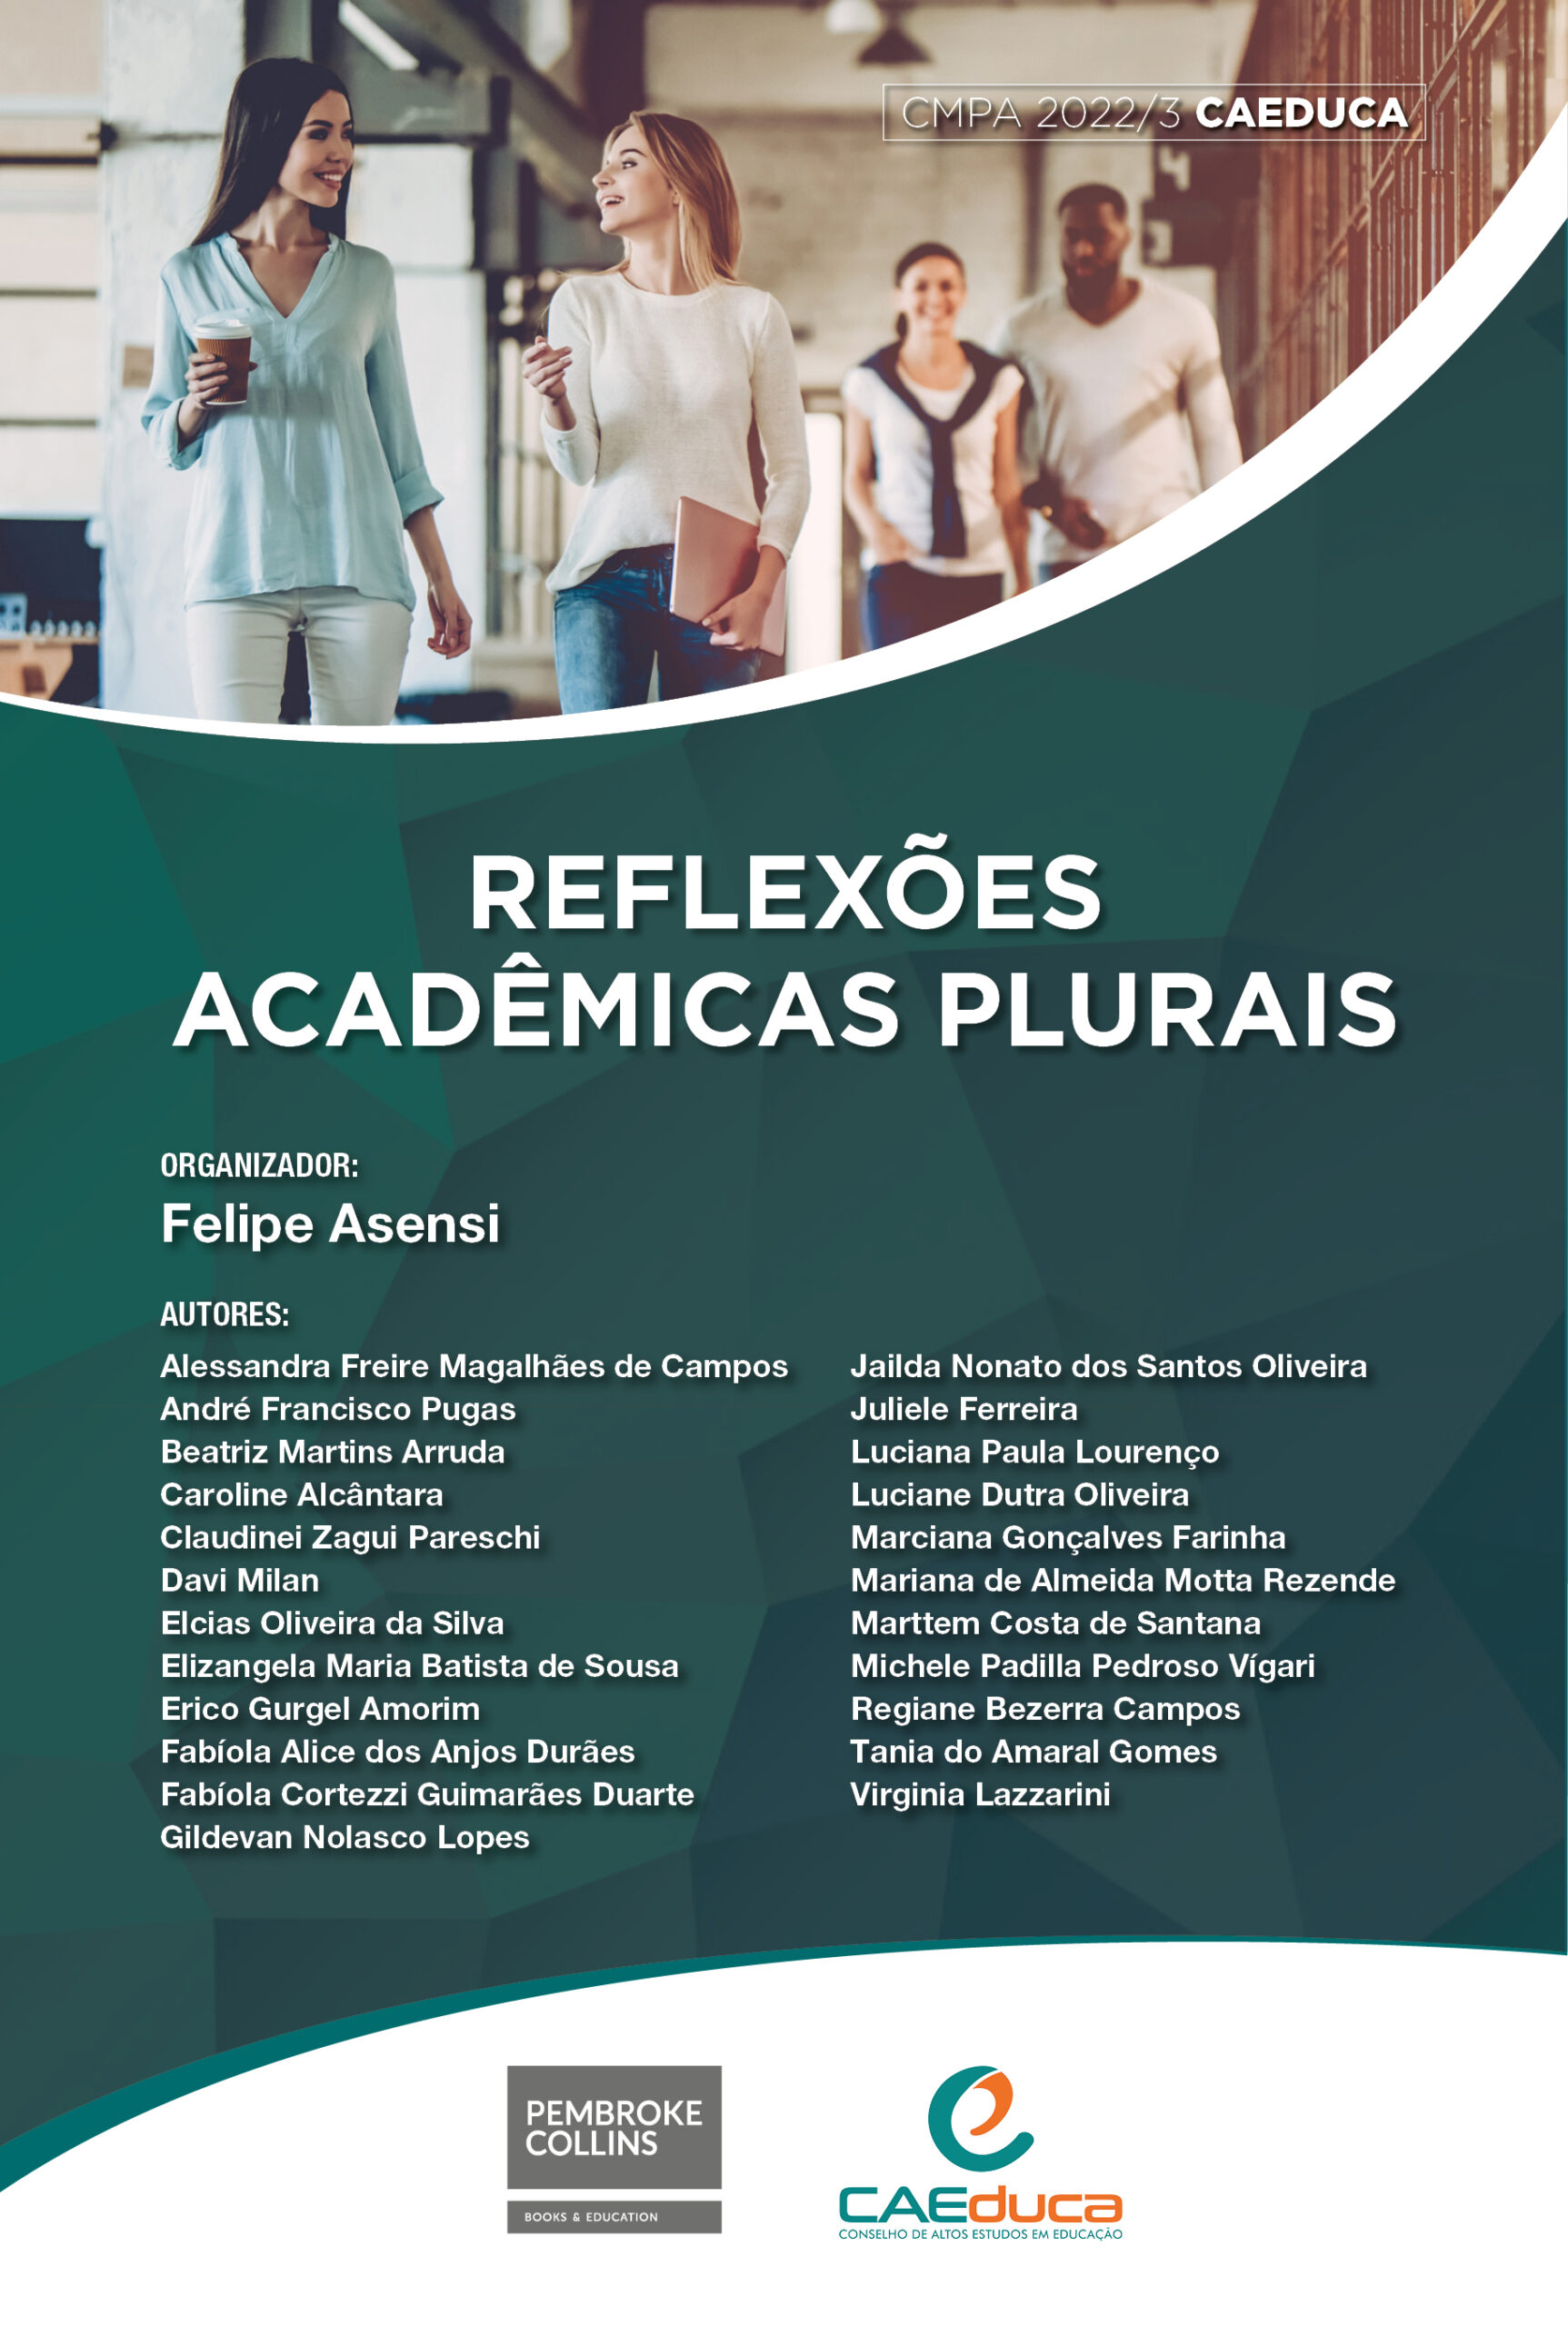 05-capa-CMPA-CAEDUCA2022-Reflexoes-Academicas-Plurais